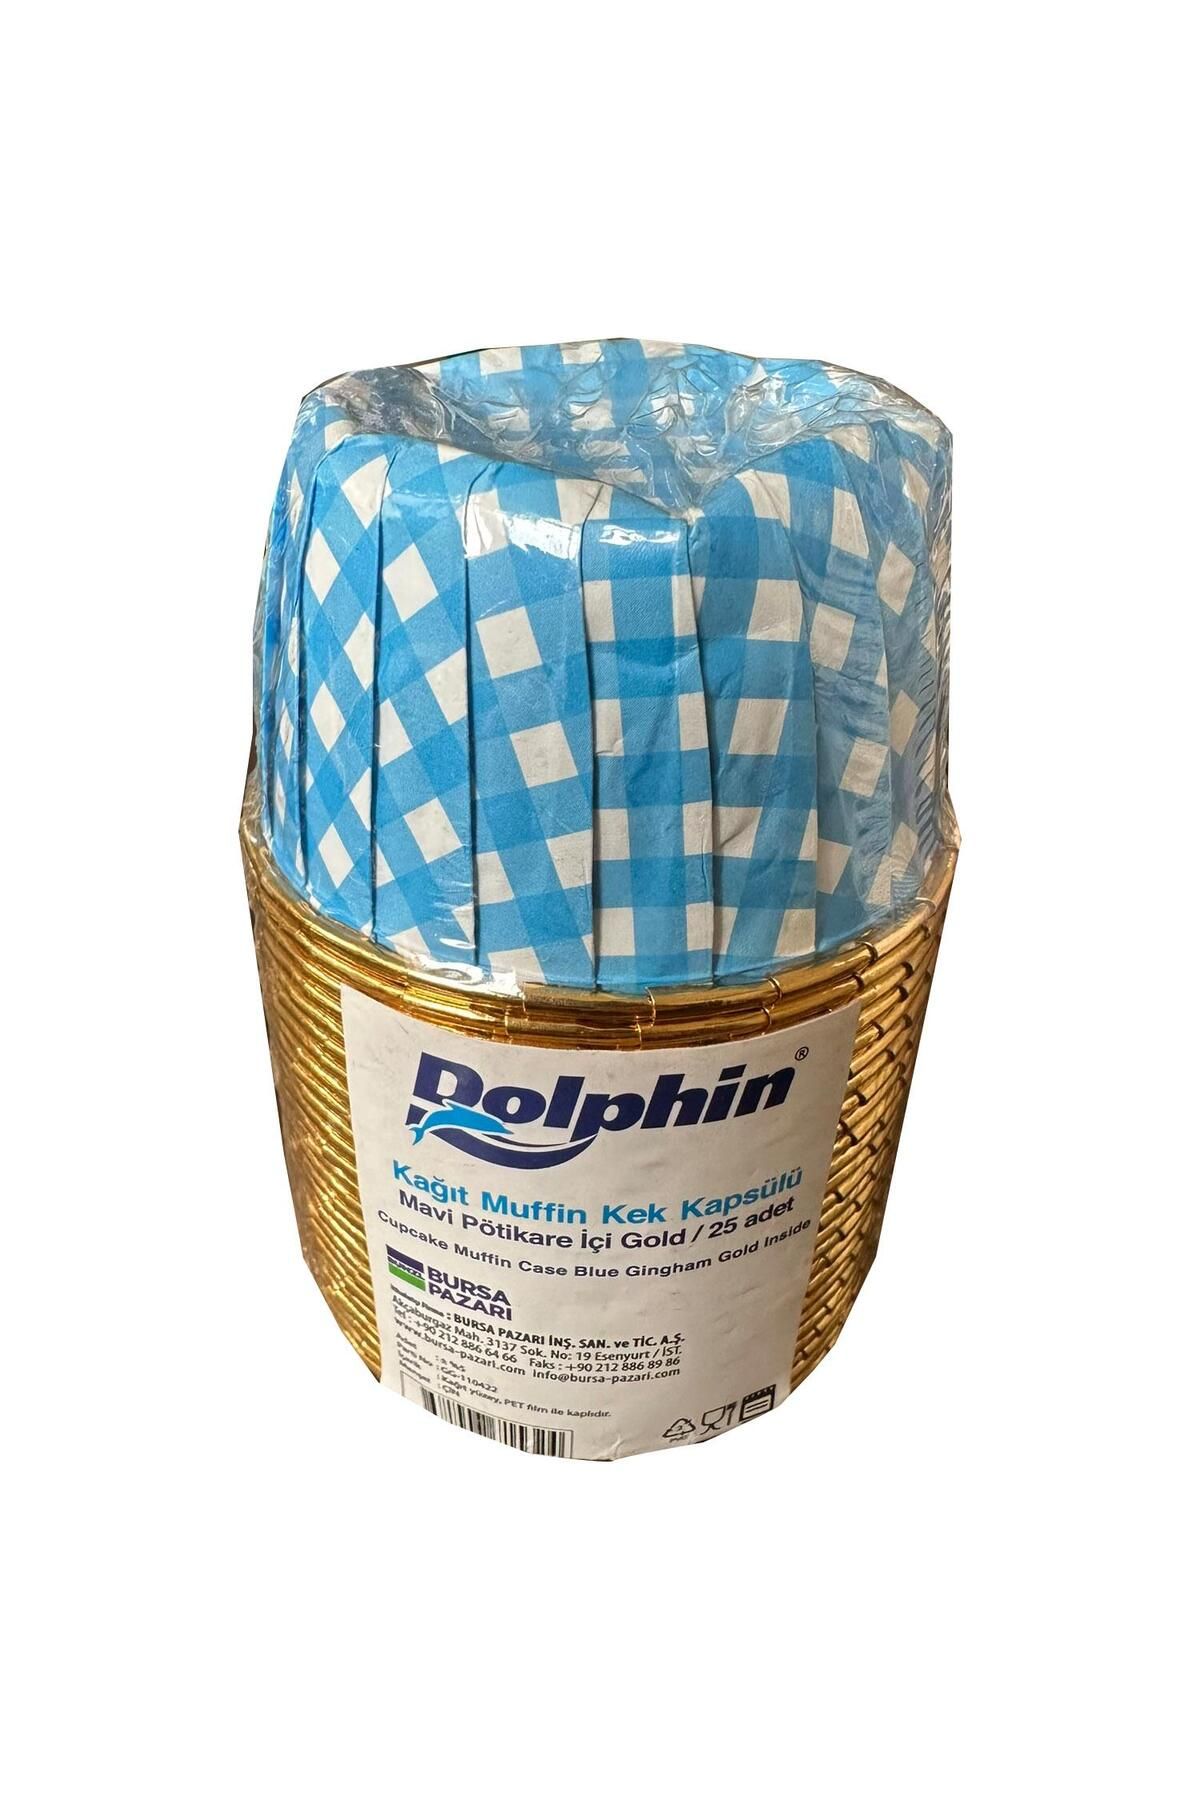 Dolphin Muffin Kağıt Karton Altın Mavi Desenli Cupcake Kek Kalıbı Kapsülü Kabı - 25 Adetlik 1 Paket